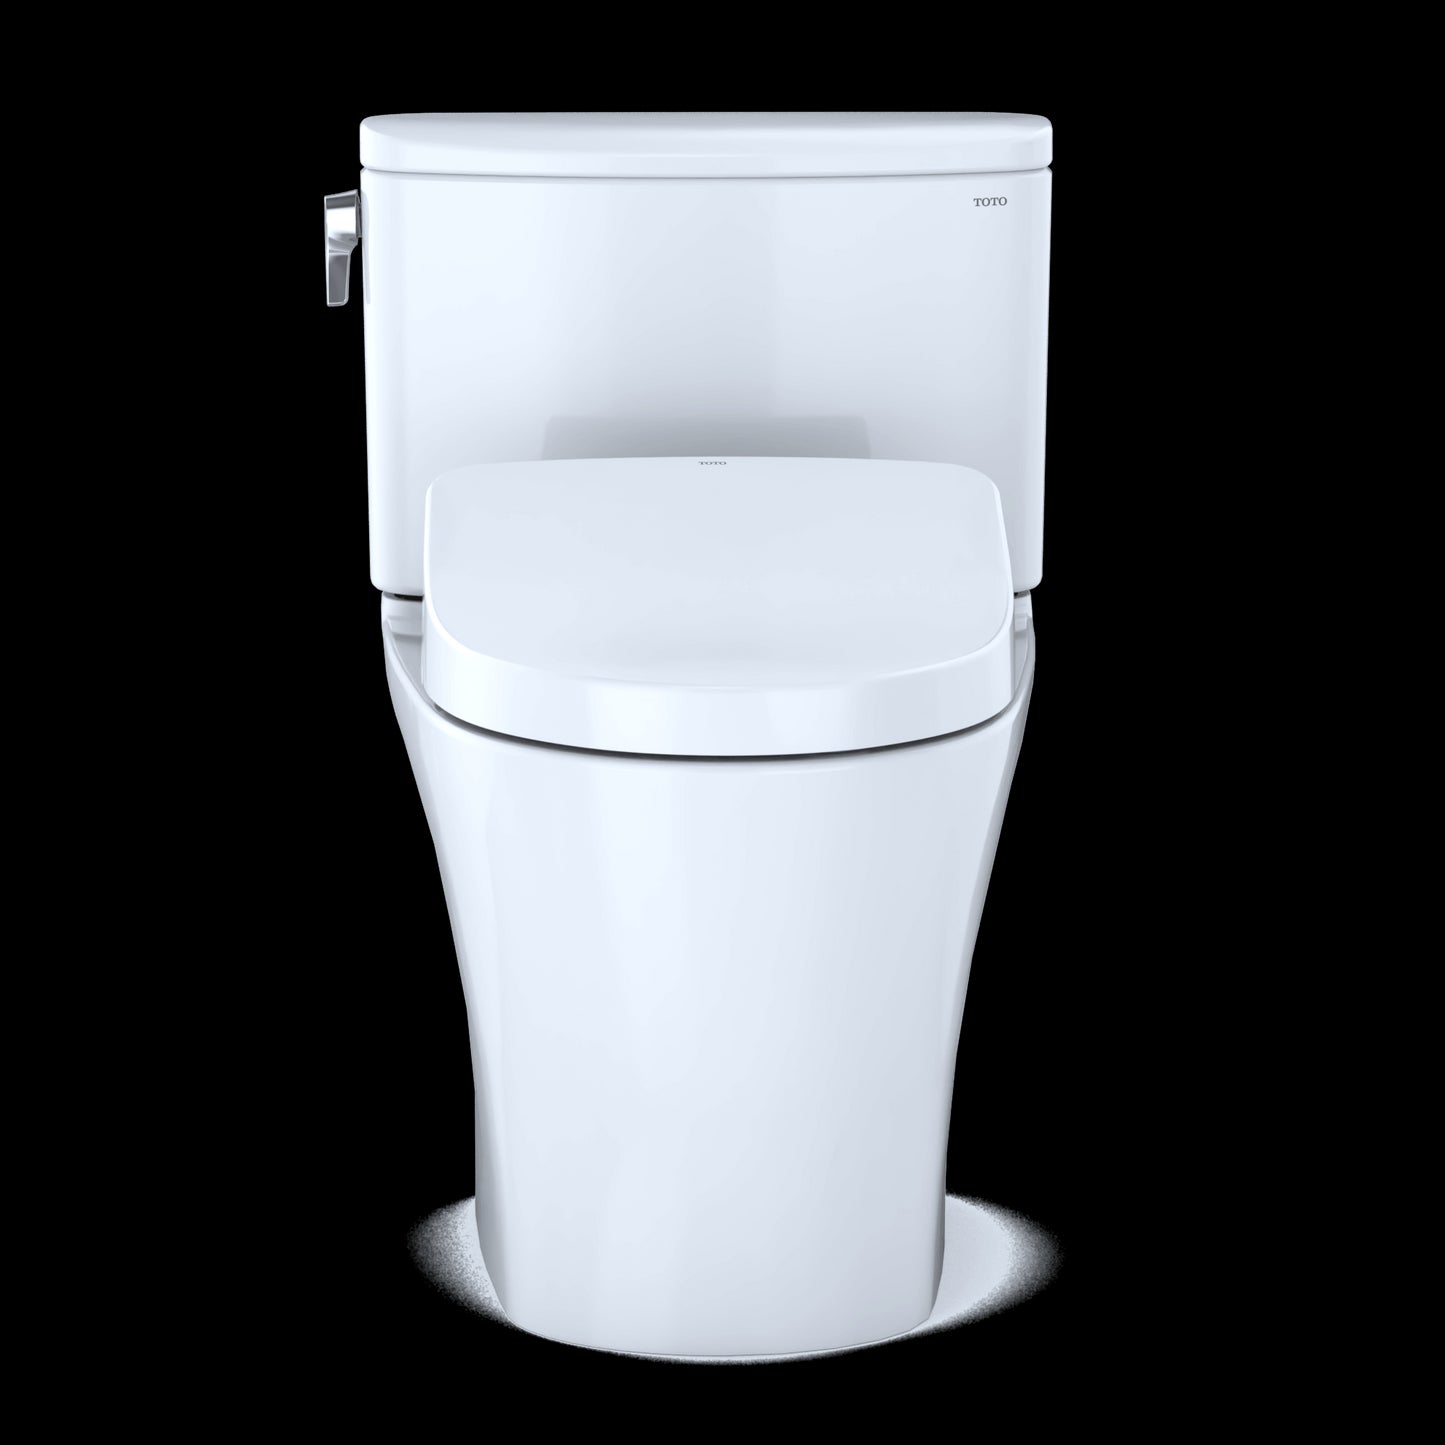 TOTO WASHLET+ Nexus Two-Piece Elongated 1.28 GPF Toilet with Auto Flush S500e Contemporary Bidet Seat, Cotton White - MW4423046CEFGA#01